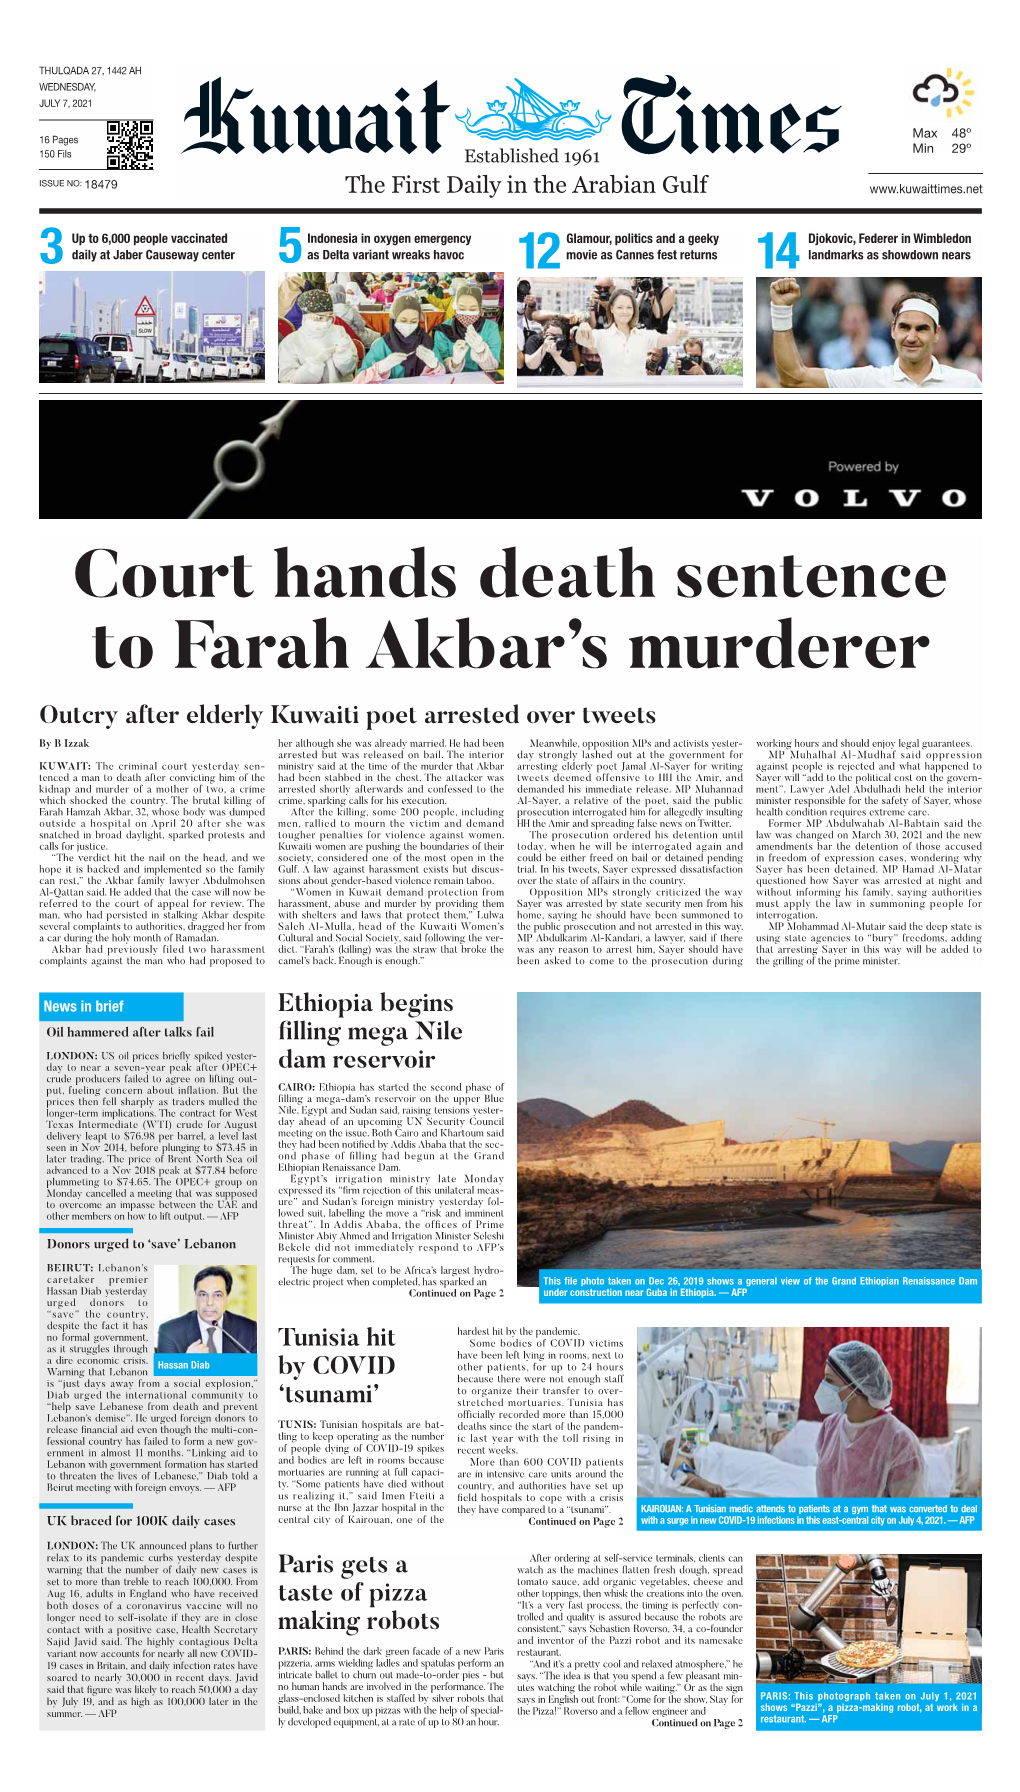 Court Hands Death Sentence to Farah Akbar's Murderer